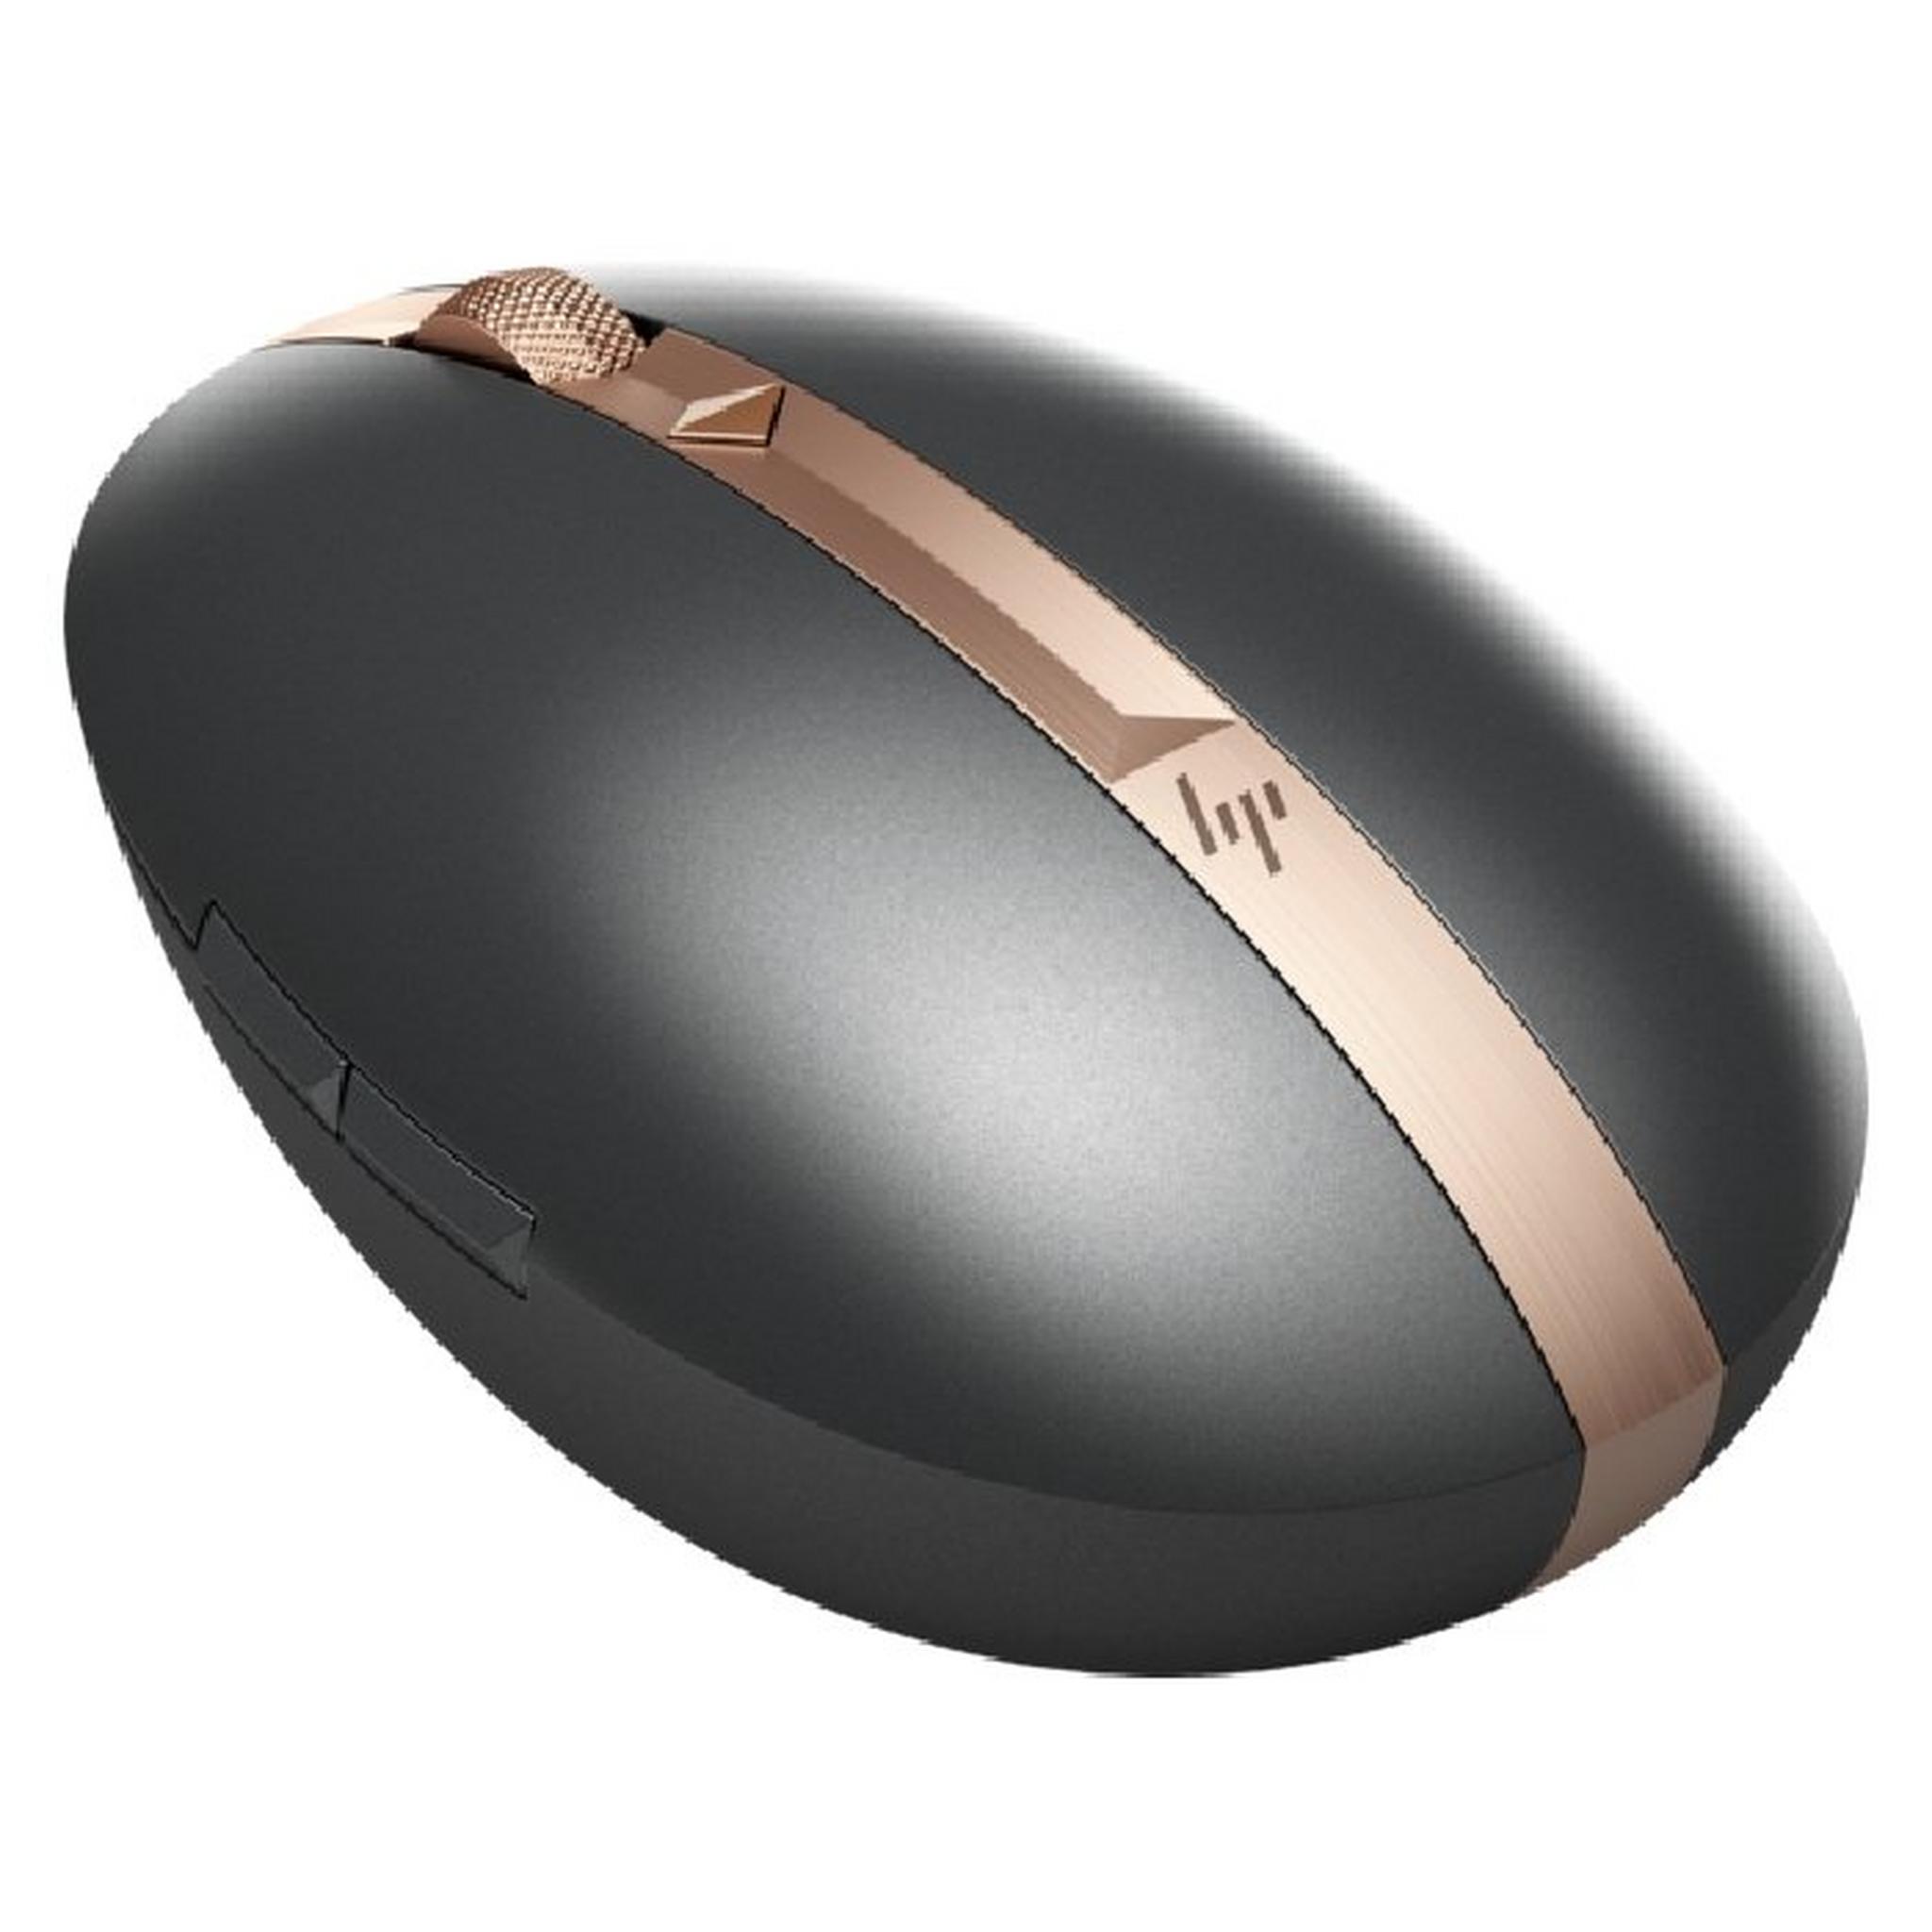 HP Spectre Rechargable Mouse 700 - Black